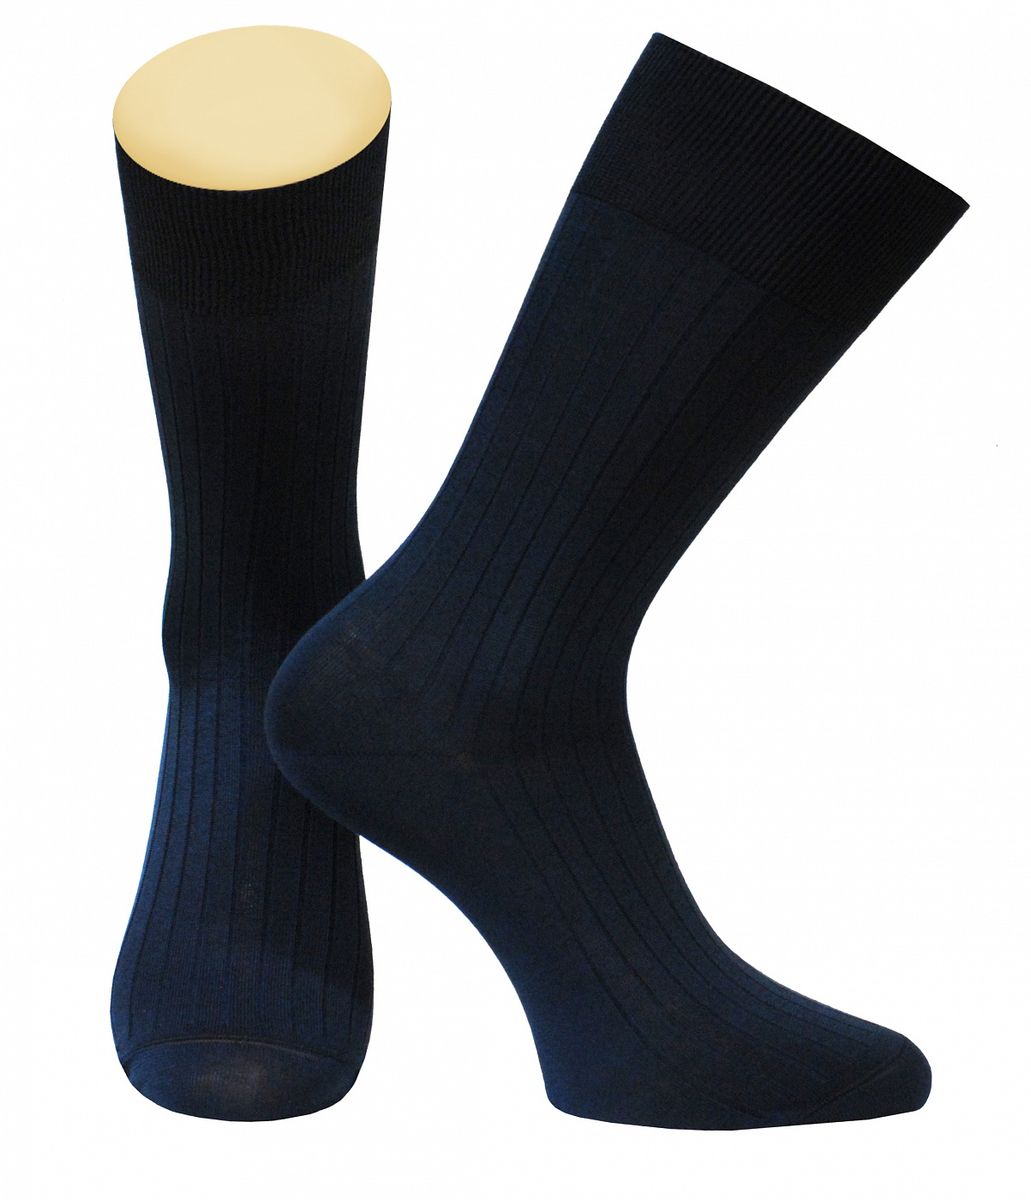 Носки мужские Collonil, цвет: темно-синий. 2-94/18. Размер 39-41